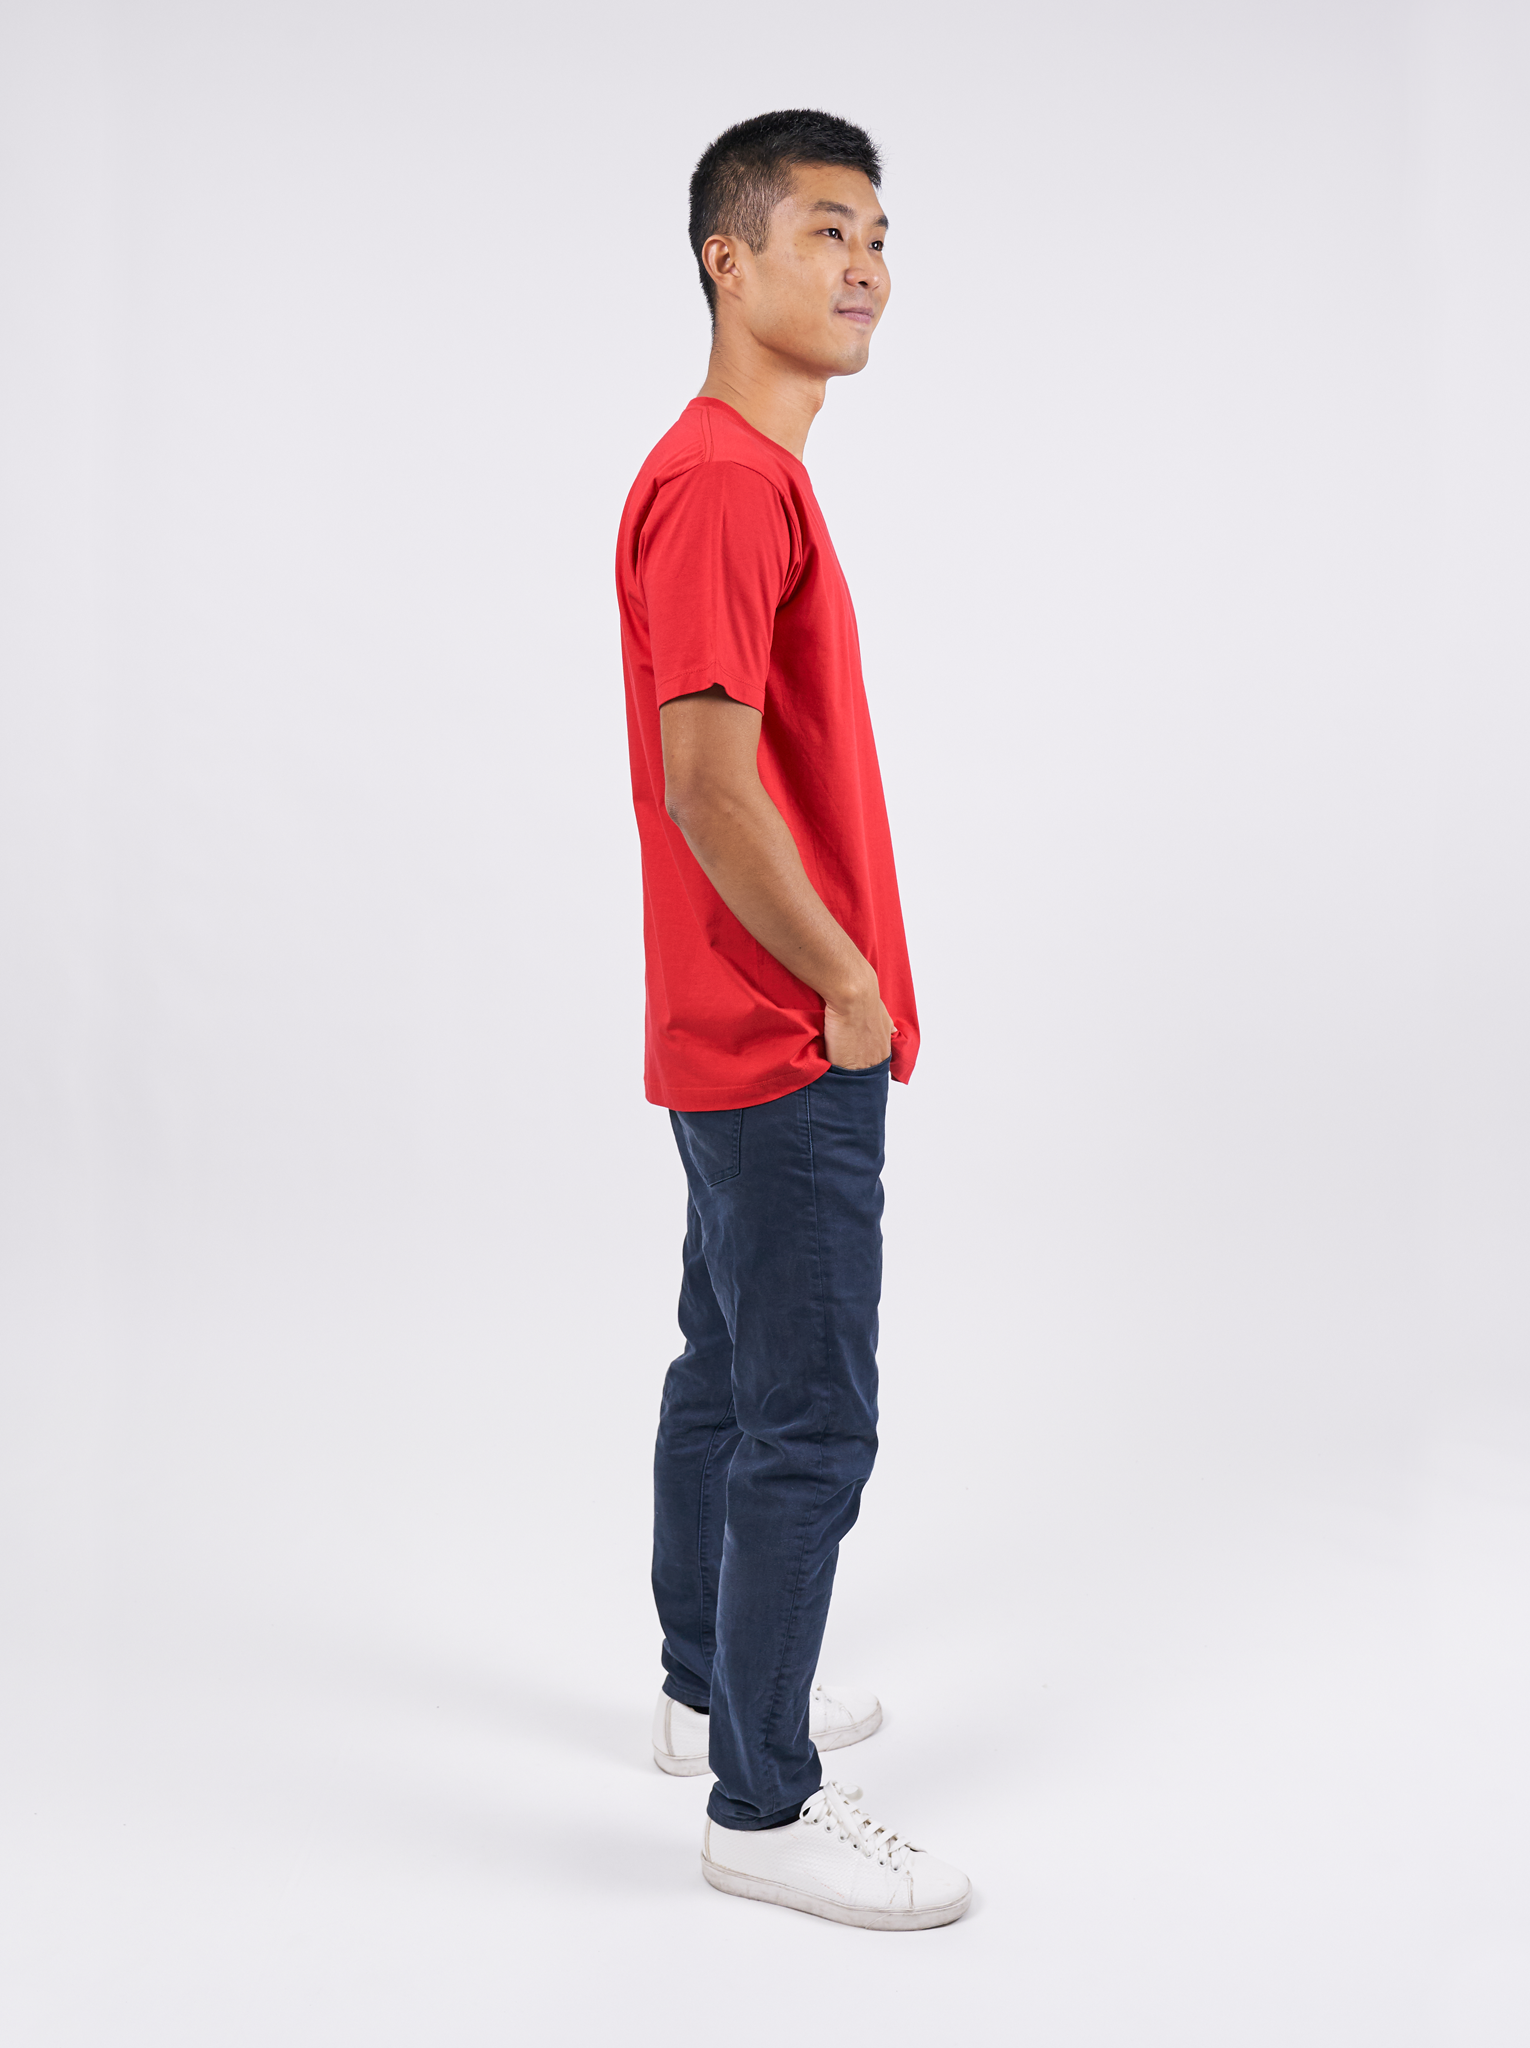 T-Shirt เสื้อยืด (Red, สีแดง)(Unisex)